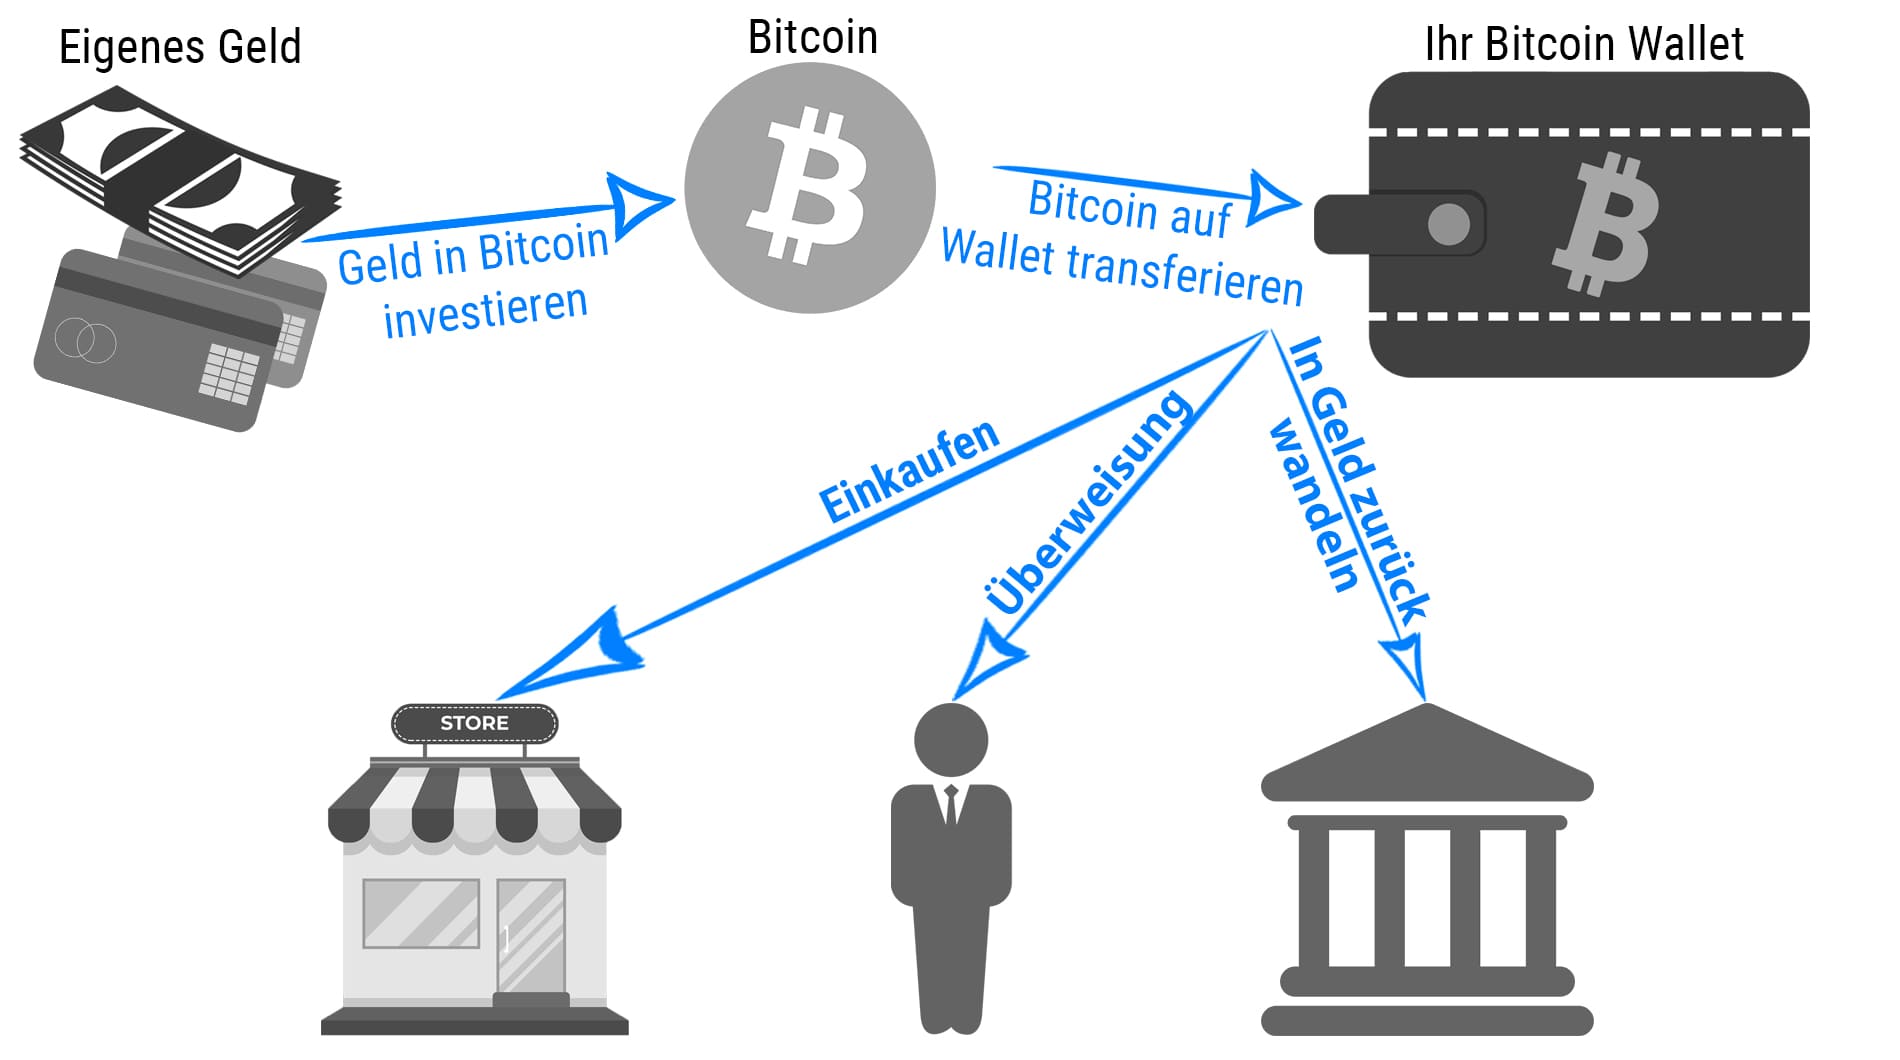 Wie ein Bitcoin Wallet funktioniert - Geld in Bitcoin investieren - Bitcoin auf das Wallet transferieren - Mit dem Wallet Bitcoin Überweisen, Einkaufen und in Geld zurück umwandeln